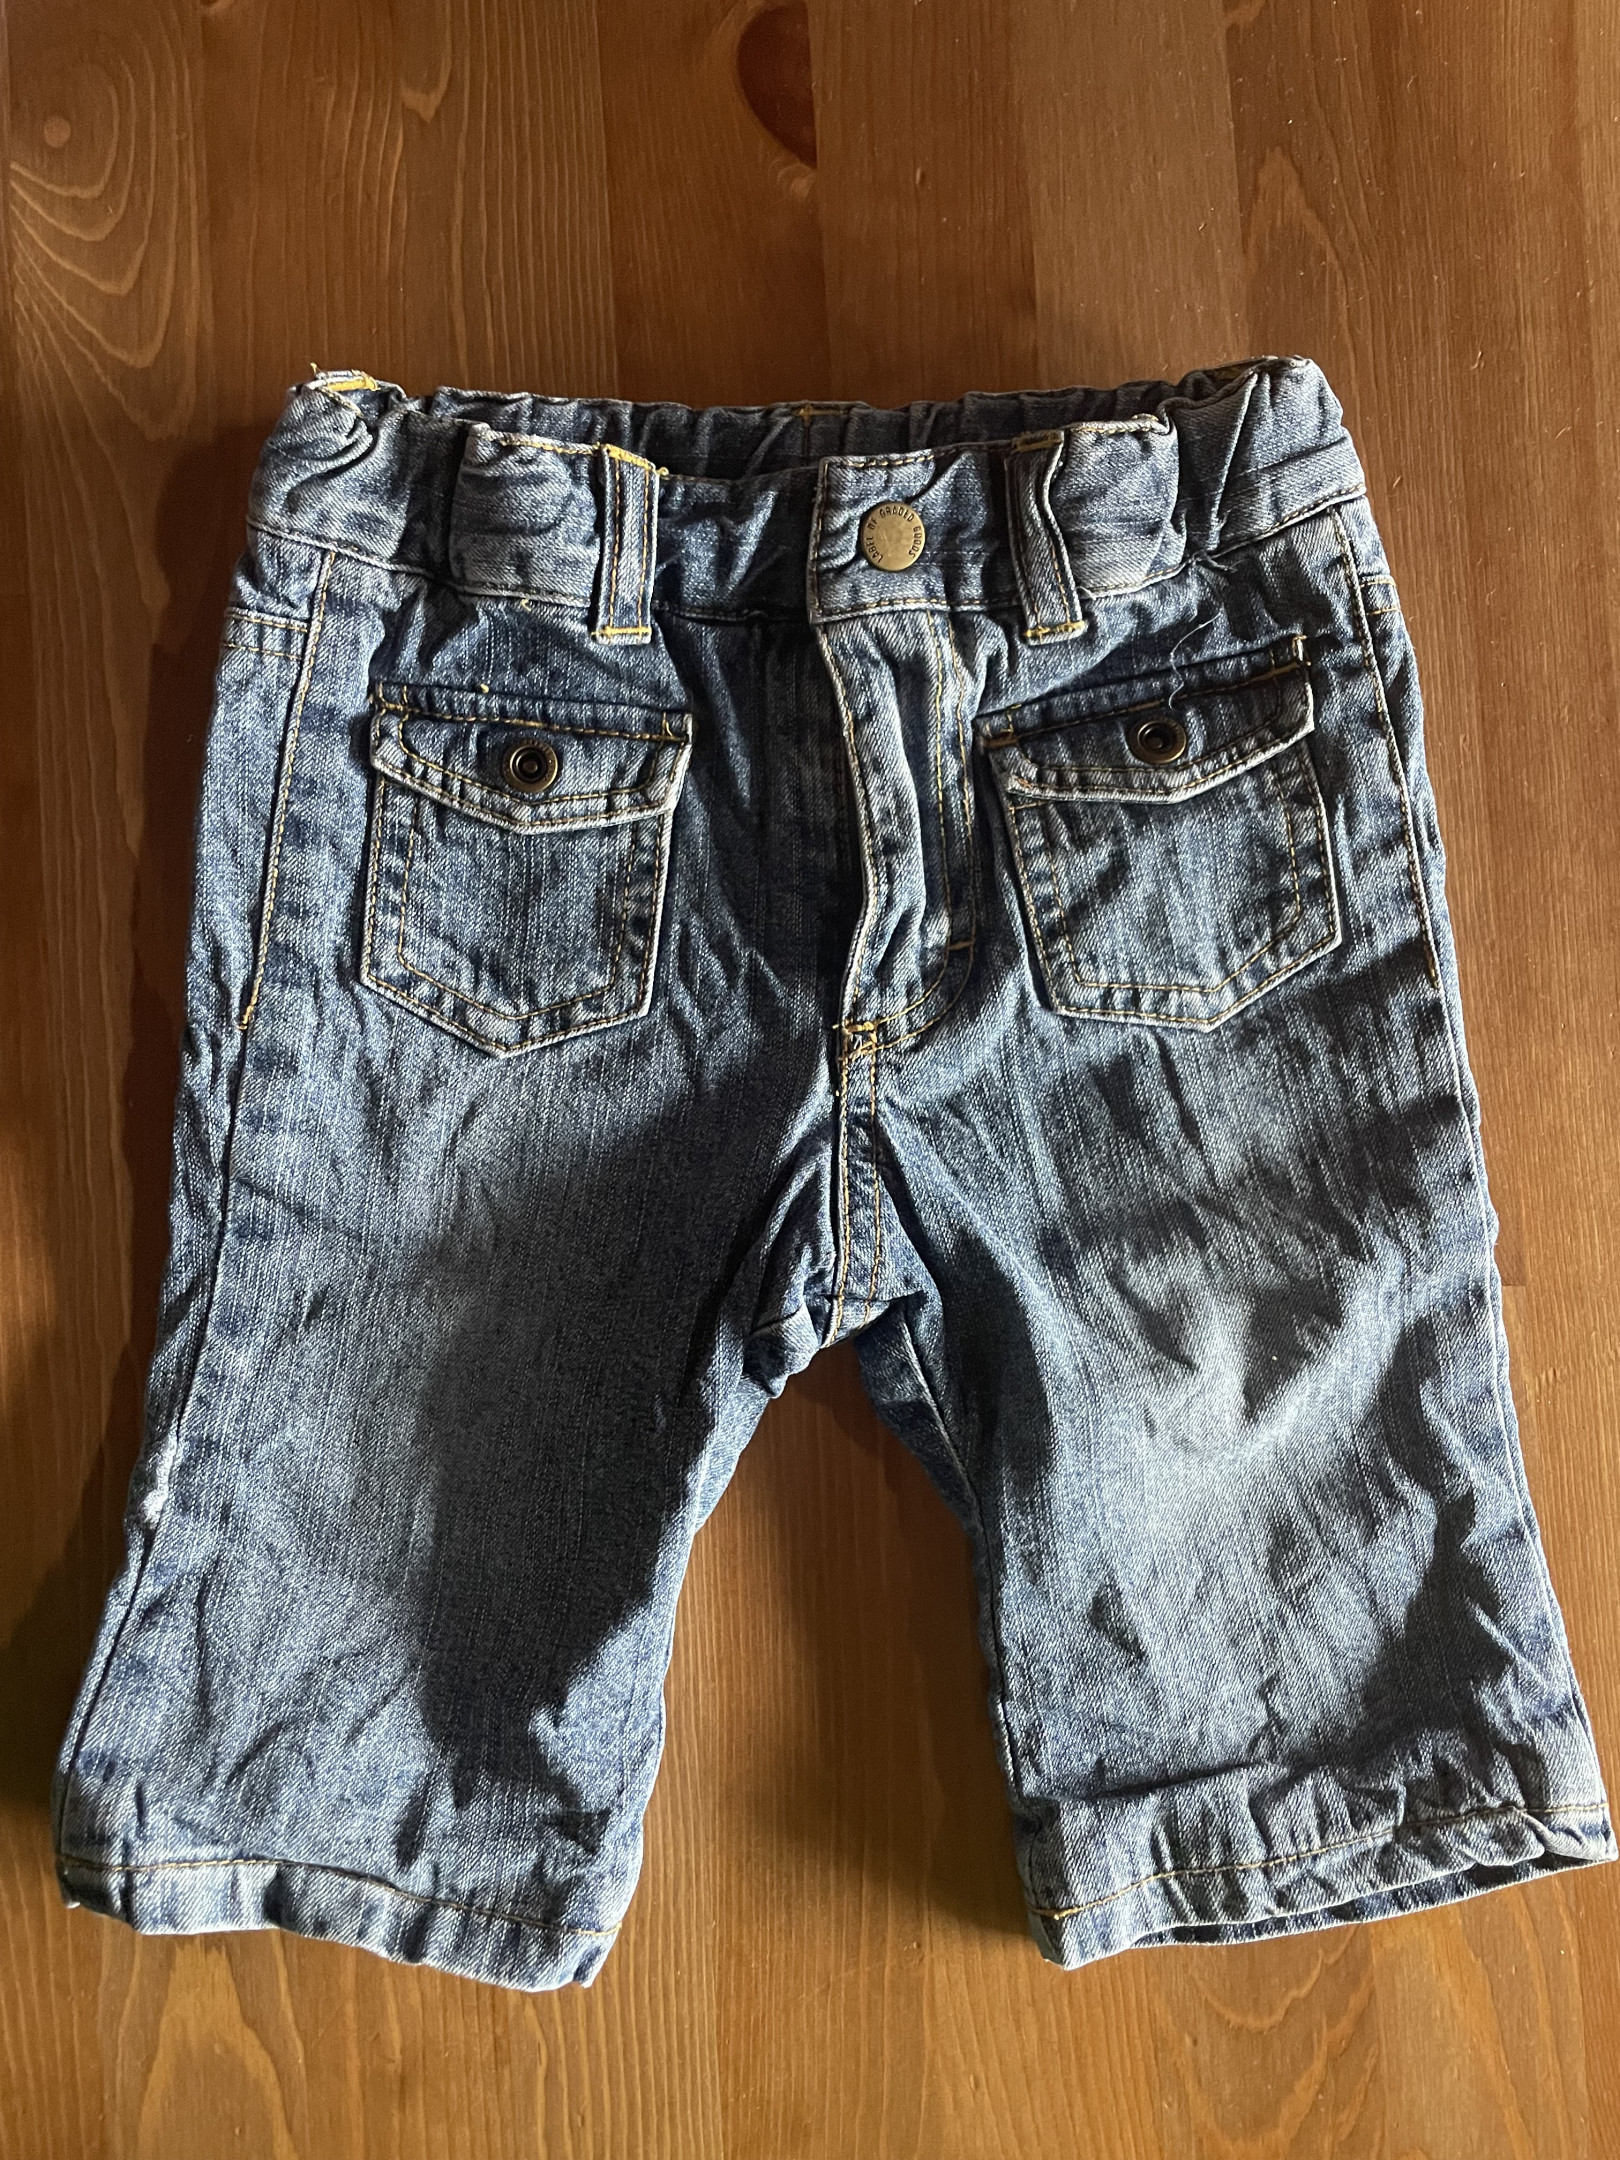 Pantalon jean H&M 2-4mois